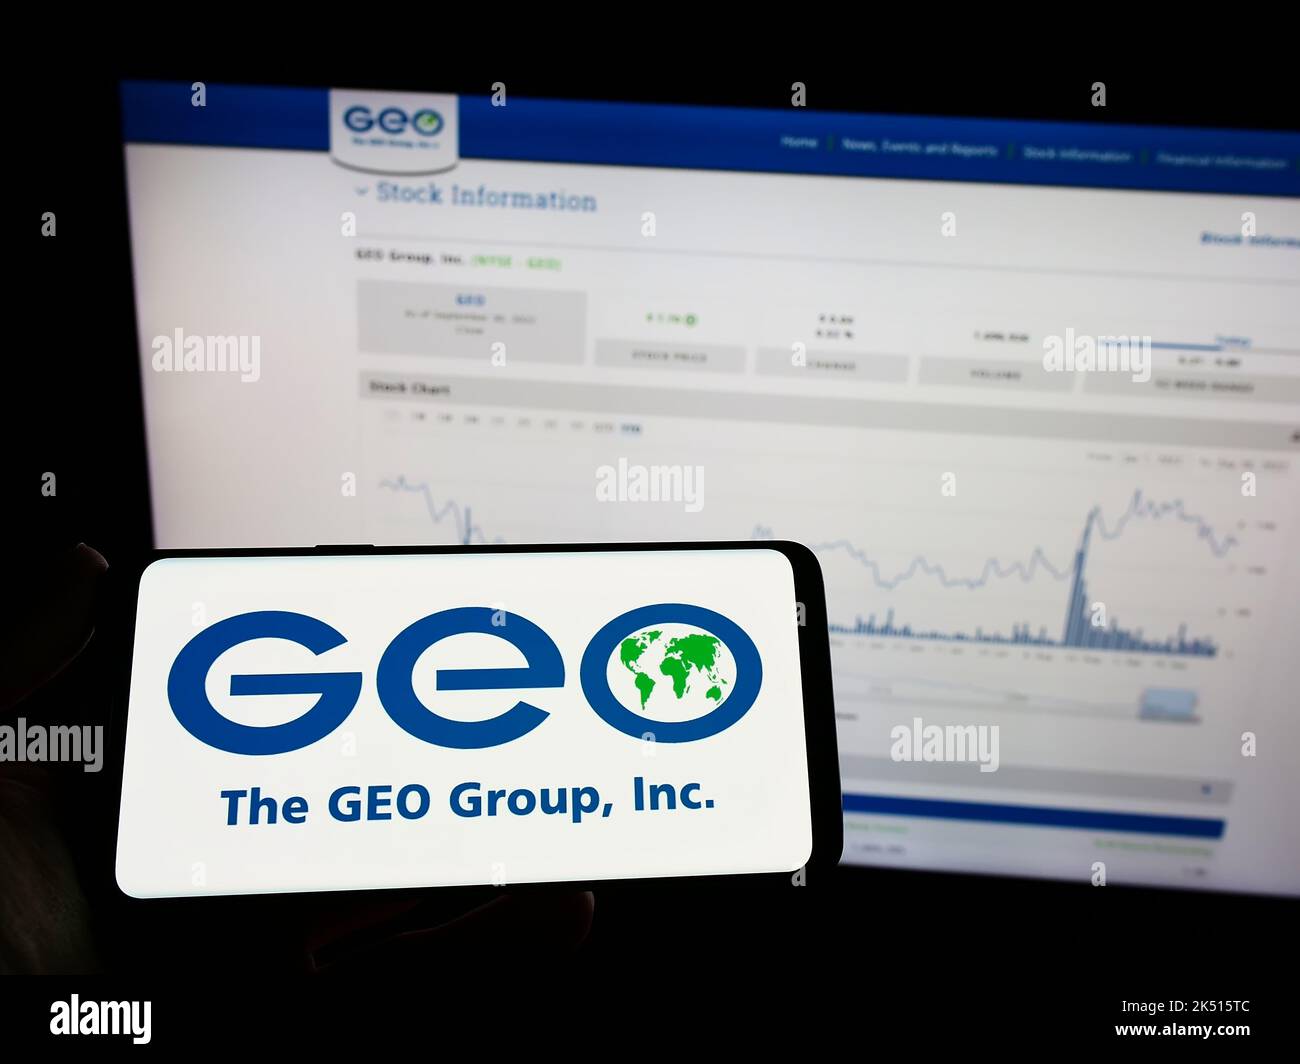 Personne tenant un téléphone portable avec le logo de la société de sécurité américaine The GEO Group Inc. À l'écran en face de la page Web. Mise au point sur l'affichage du téléphone. Banque D'Images